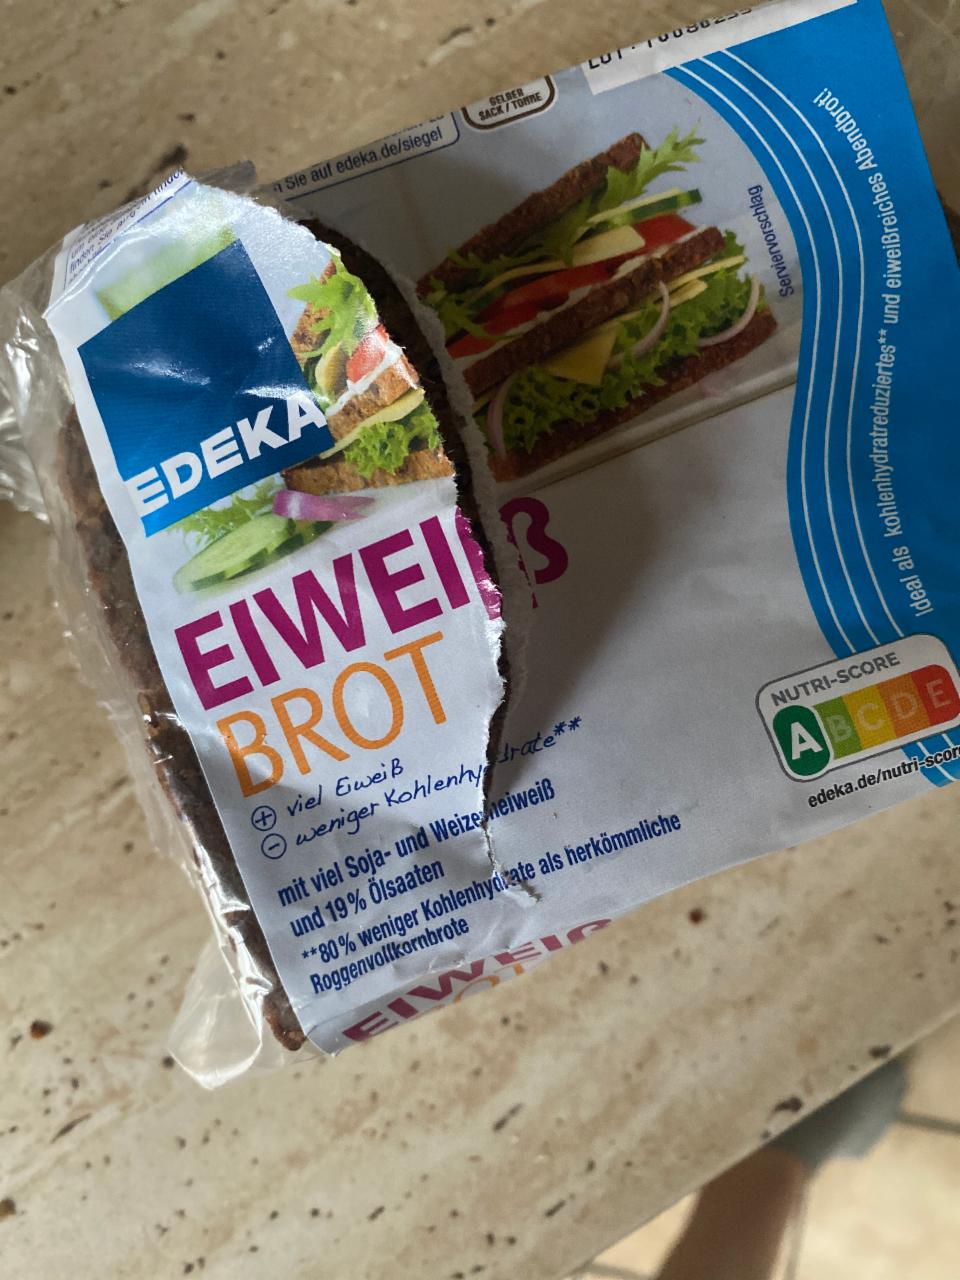 Фото - хлеб ржаной для сендвичей Edeka